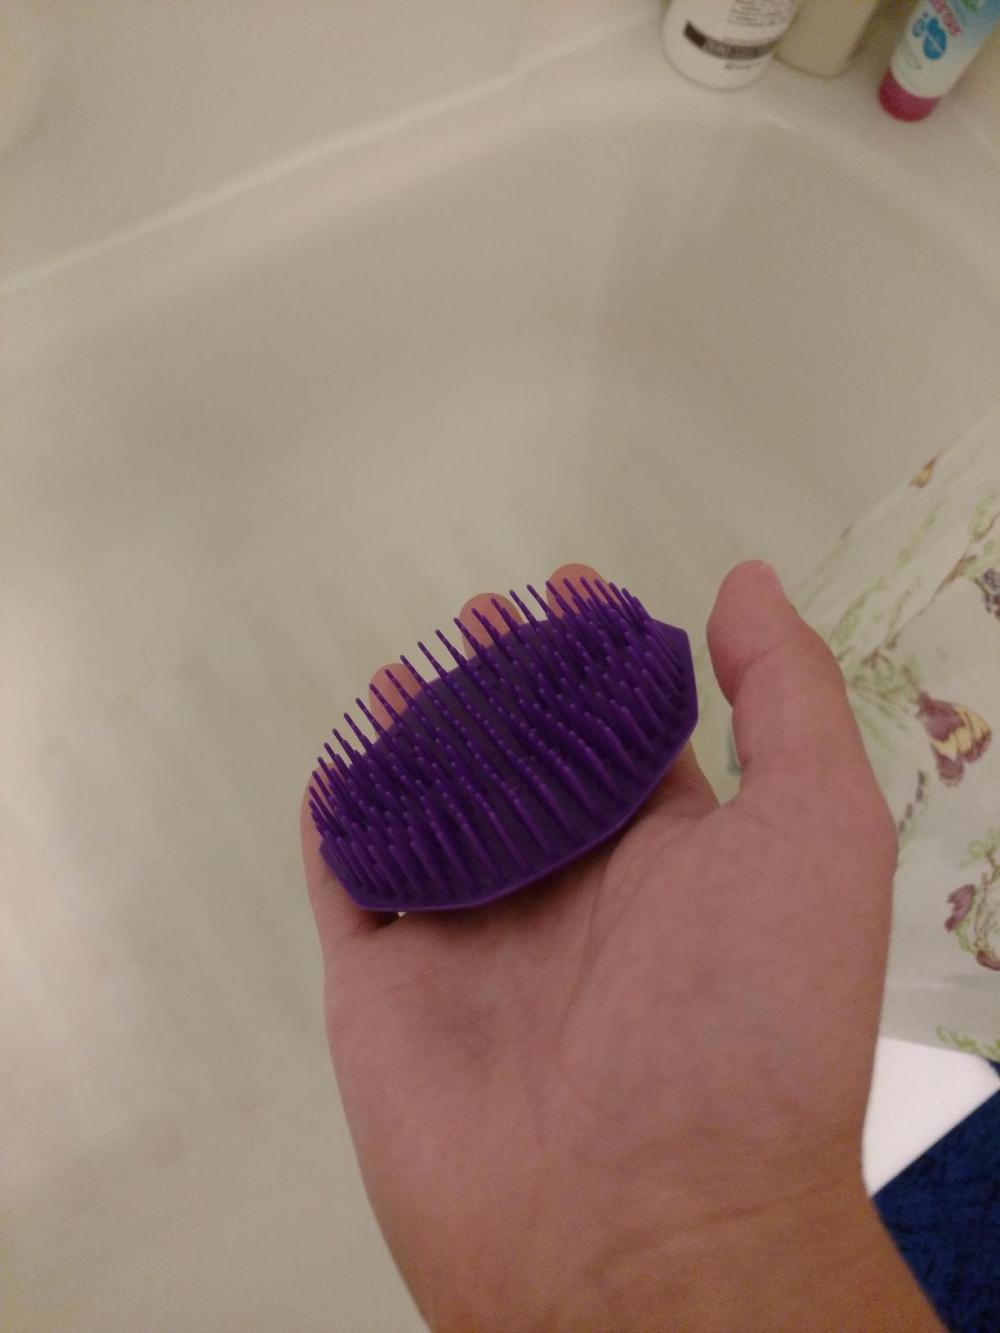 Shampoo Brush